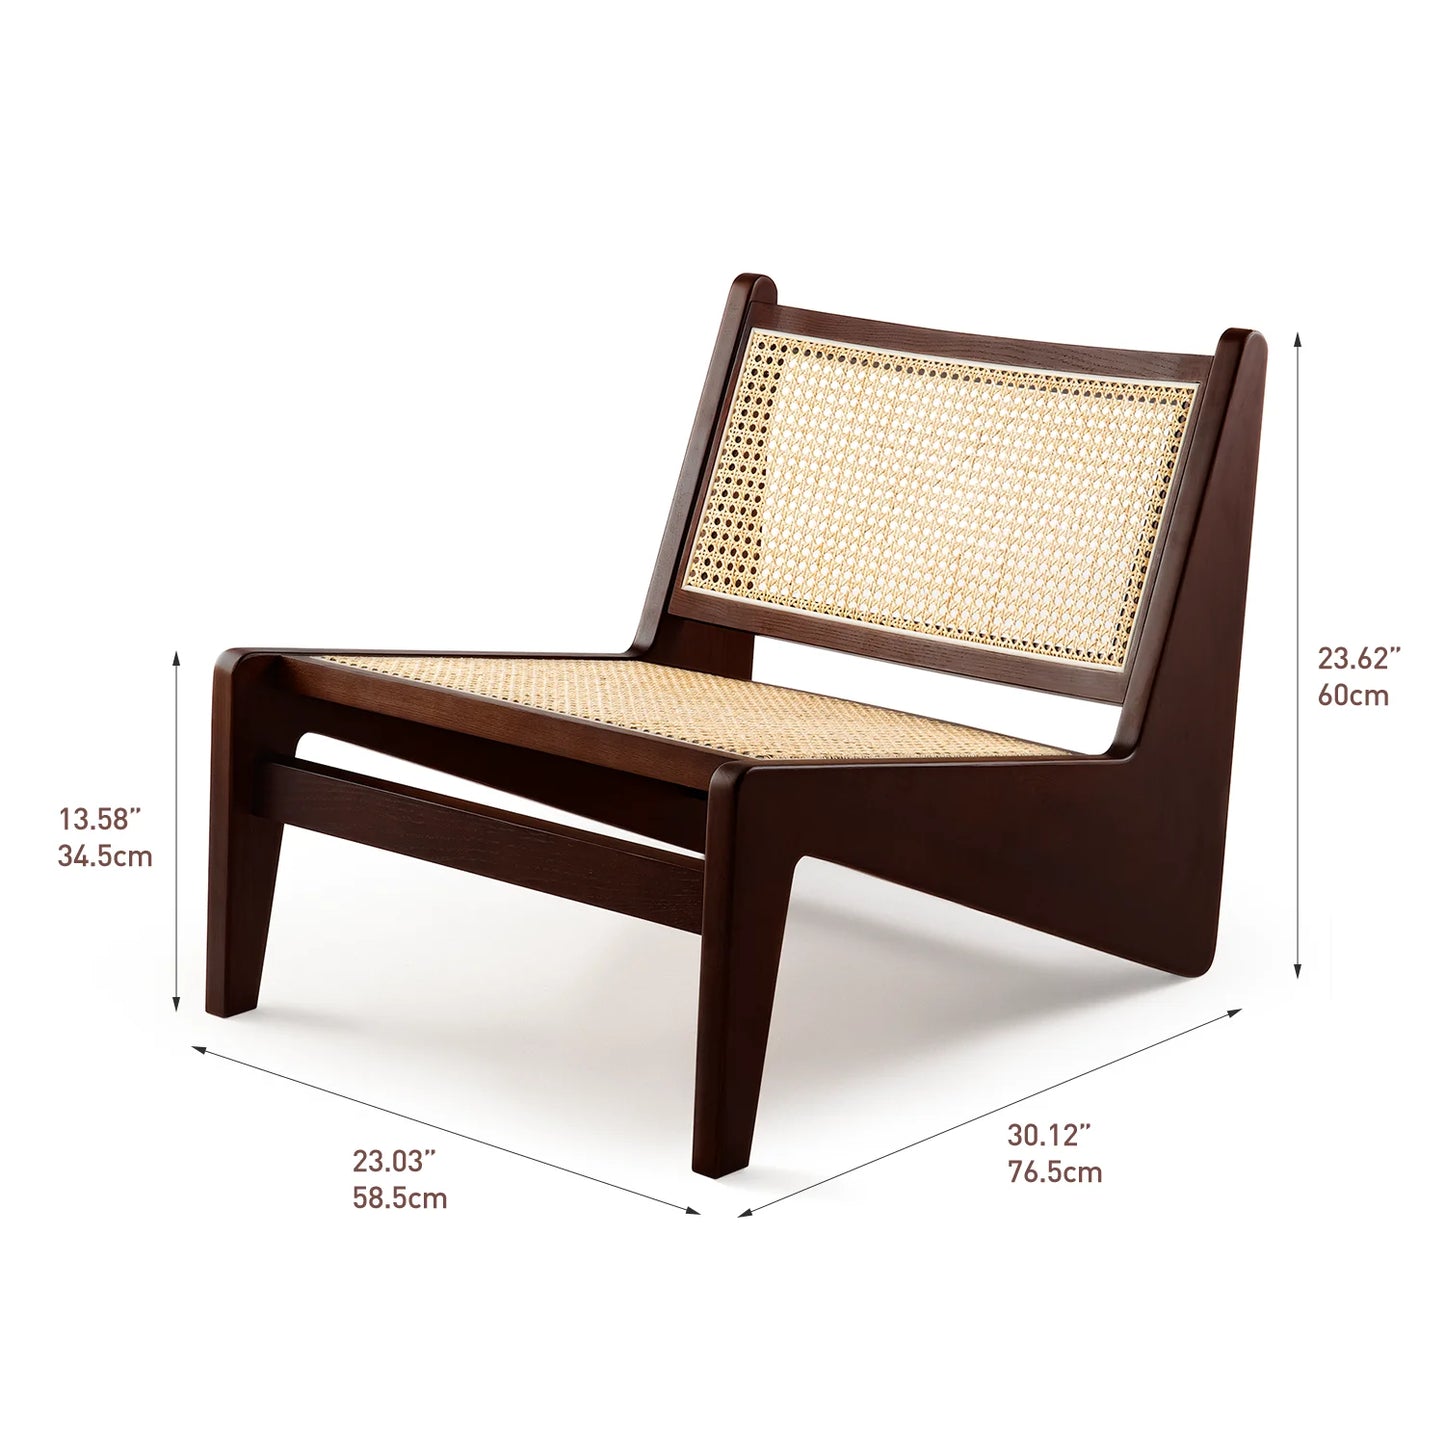 CORX Designs - Chandigarh Kangaroo Chair - Review